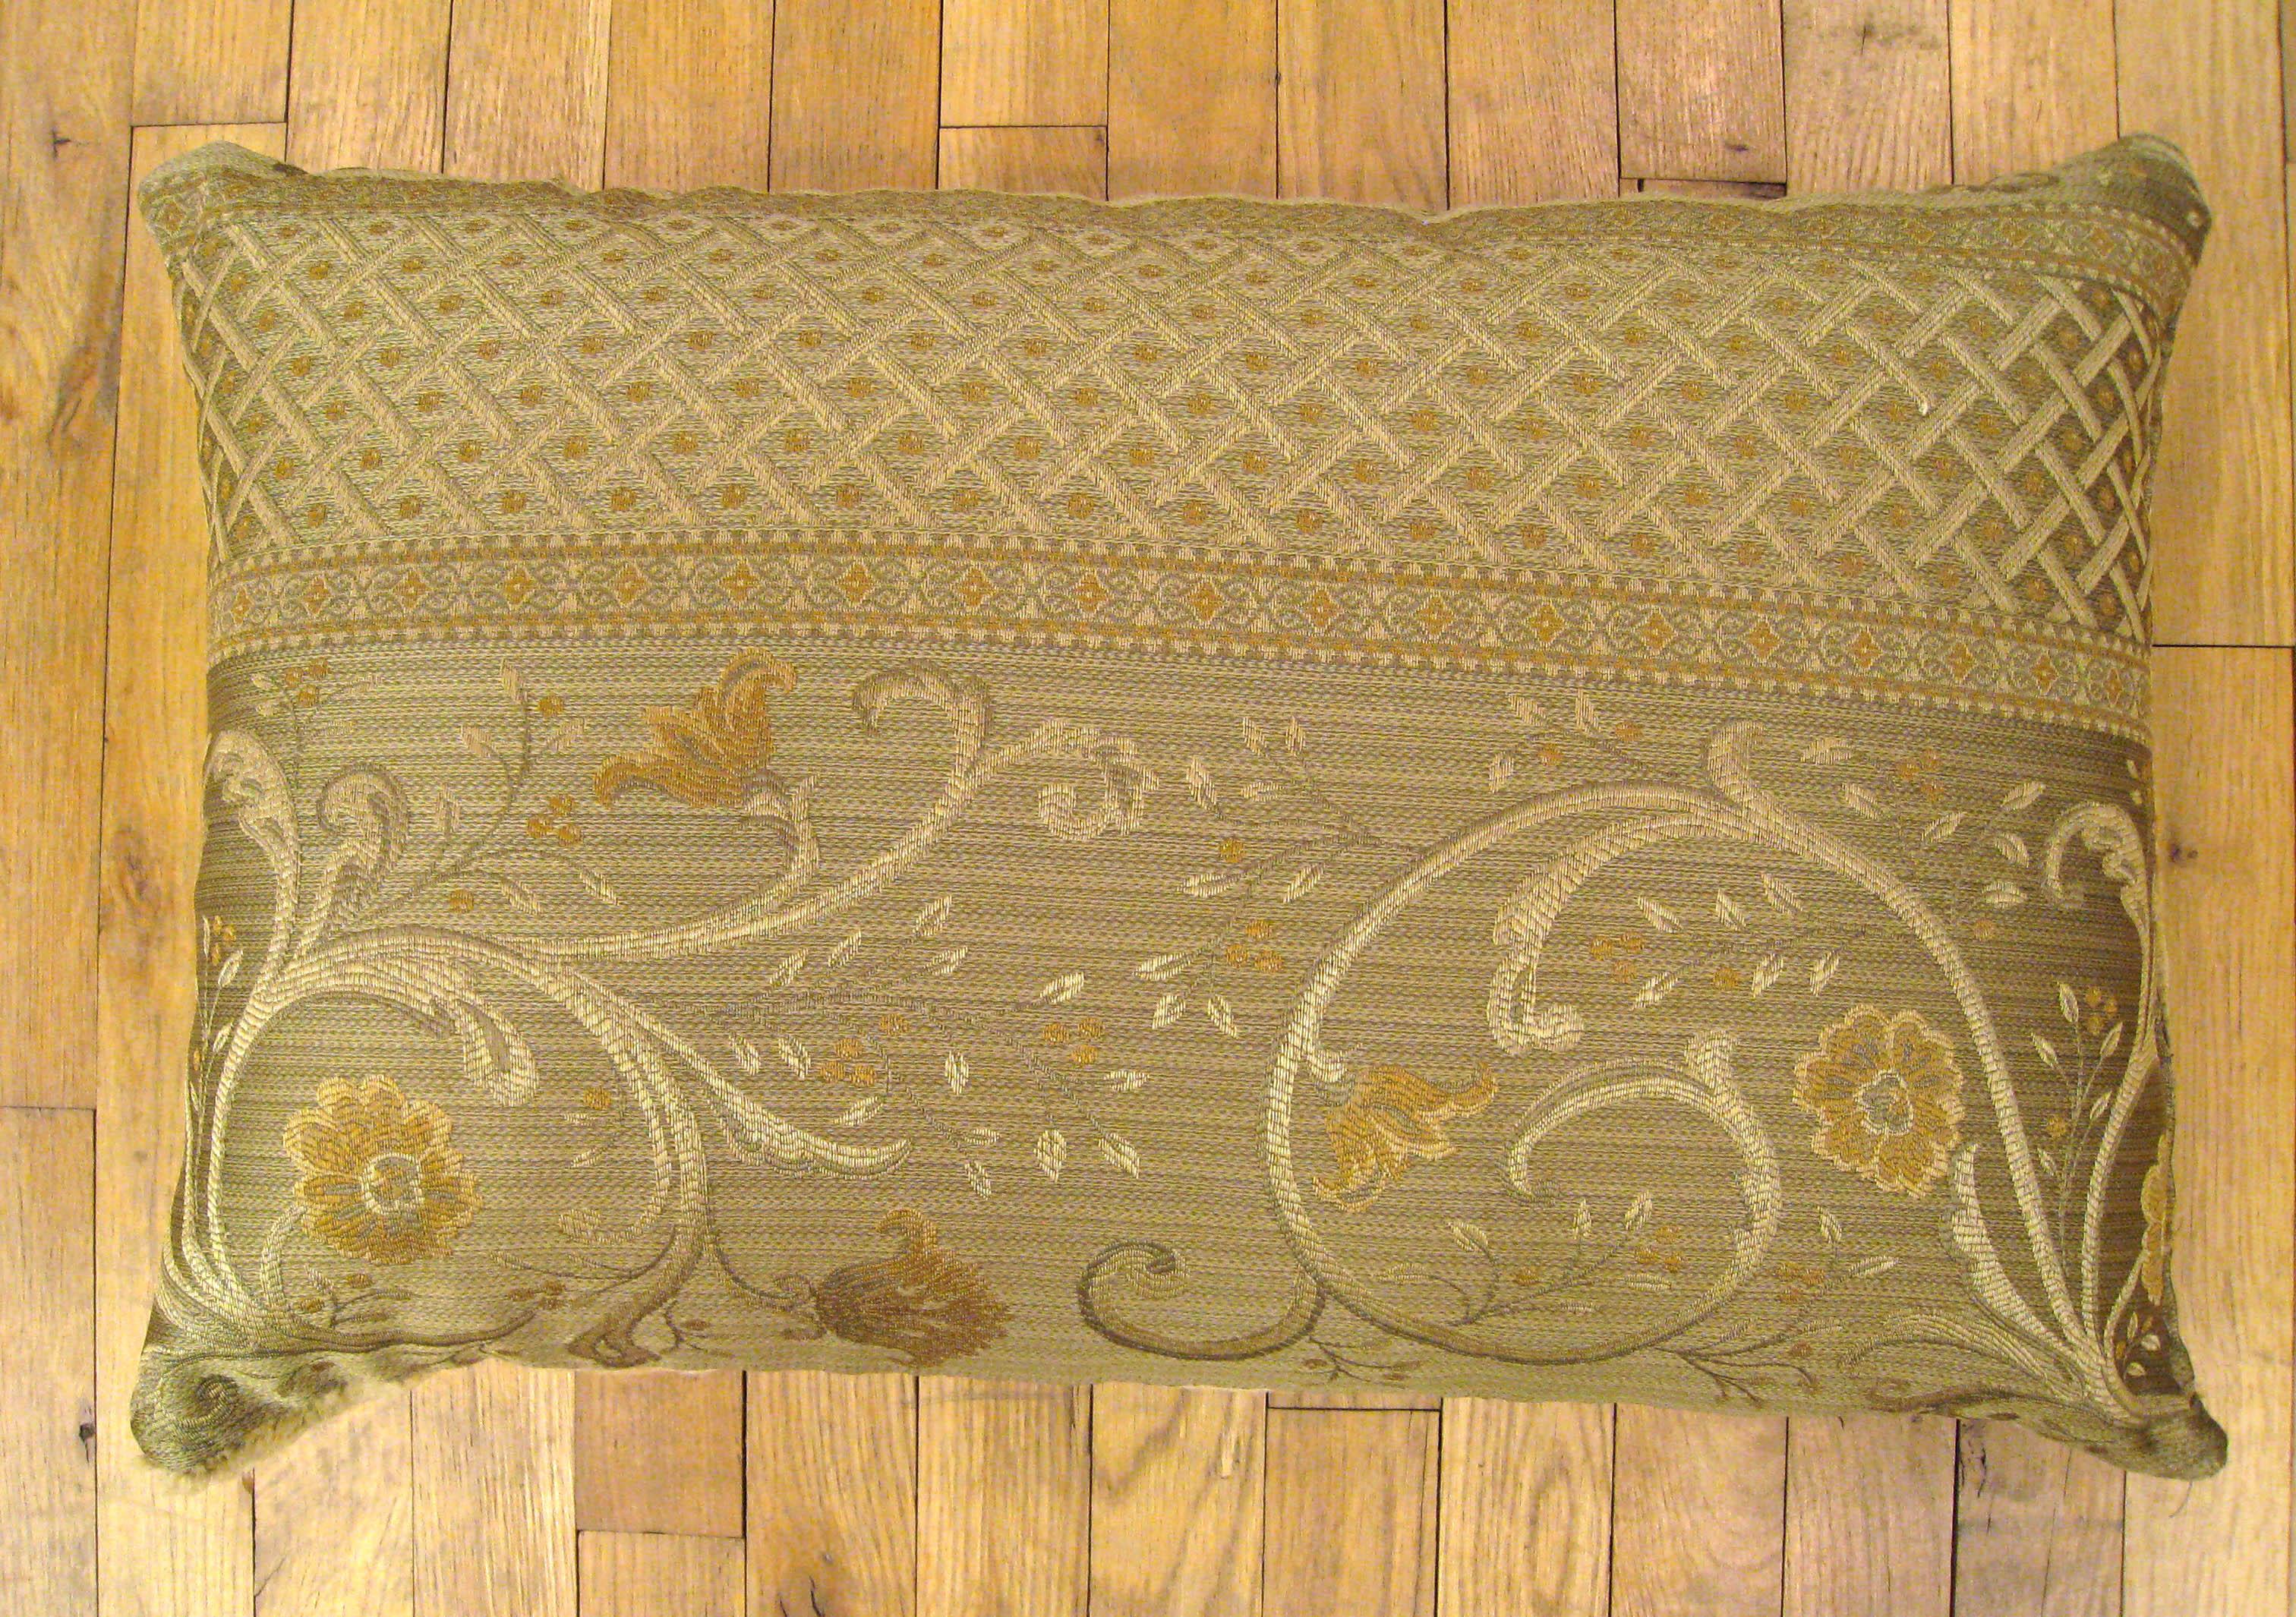 Pair of Decorative Antique European Savonnerie Carpet Pillows with Floral Design 5